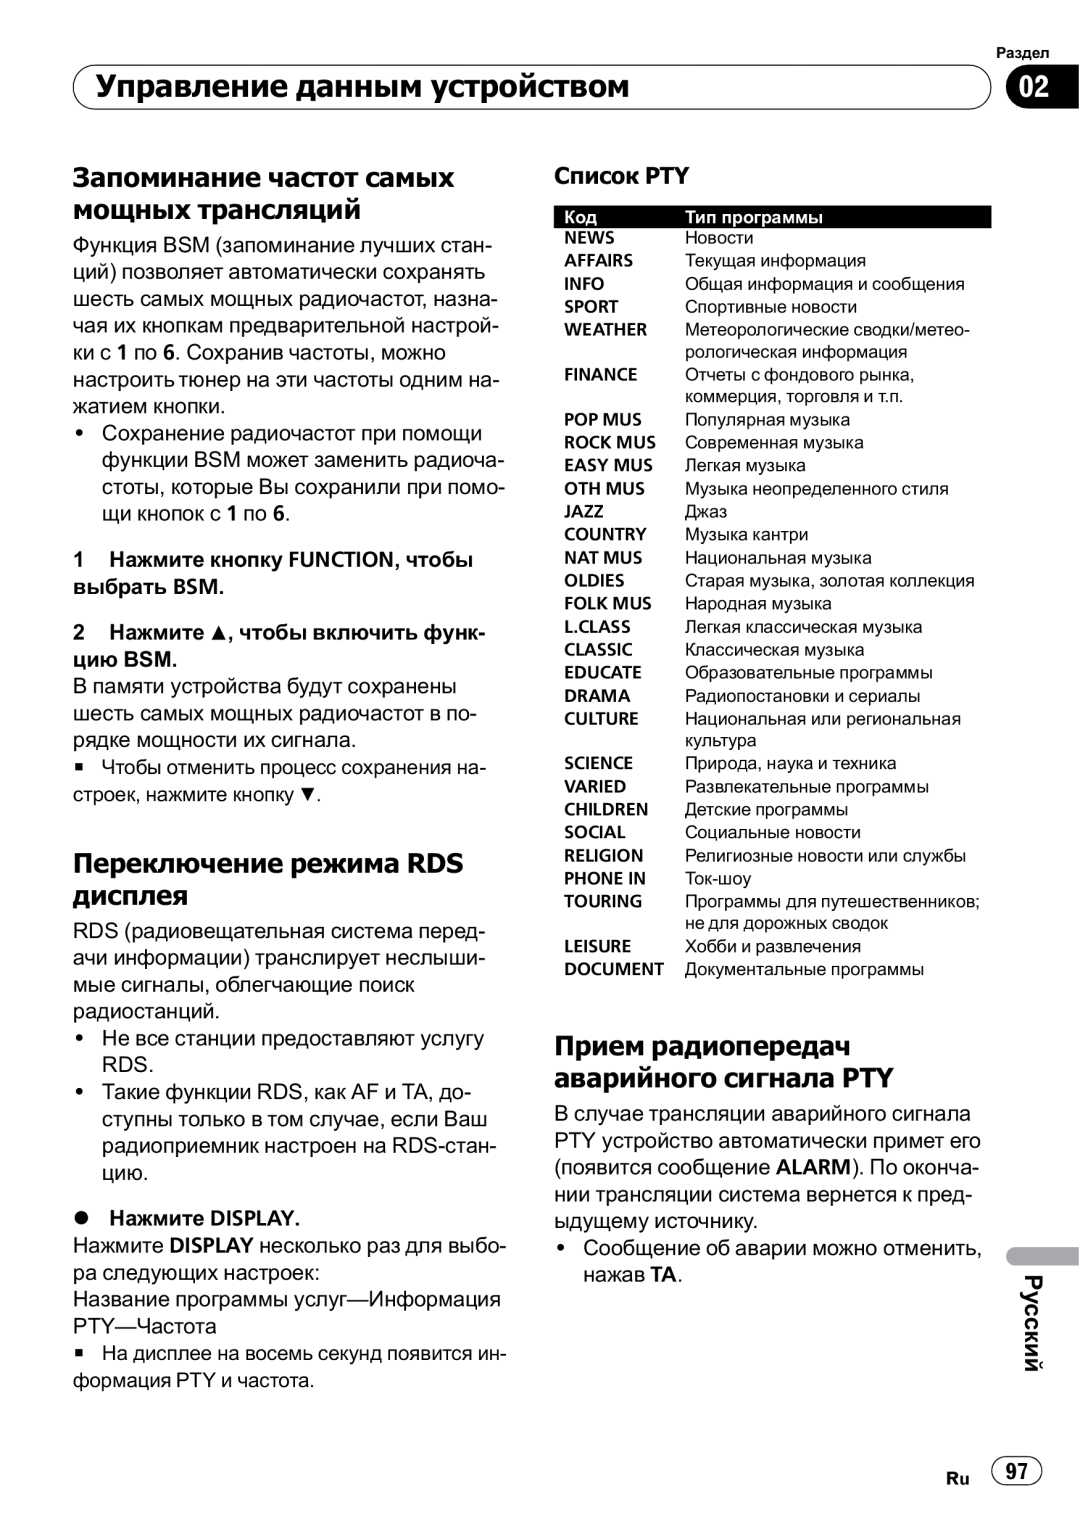 Pioneer DEH-1000E, DEH-1020E Запоминание частот самых мощных трансляций, Переключение режима RDS дисплея, Русский 